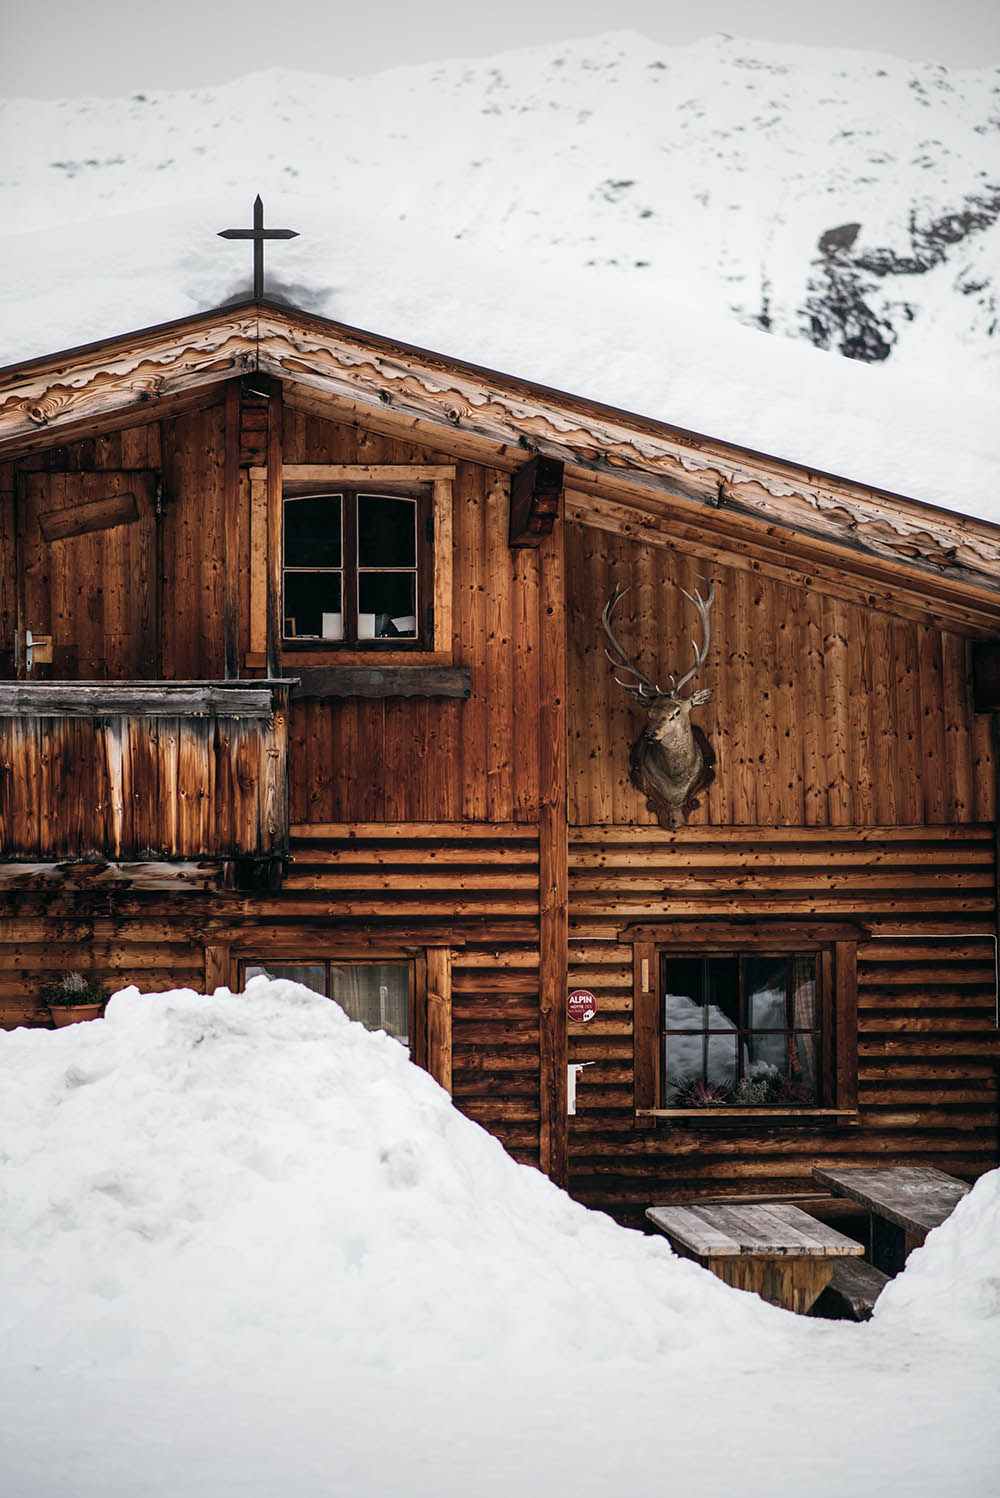 Rodelbahn Brandstattalm, Obernbergtal, Stubaital #mountainhideaways #naturrodelbahn #tirol #familienausflug #rodelnmitkindern #rodeln #winterwandern